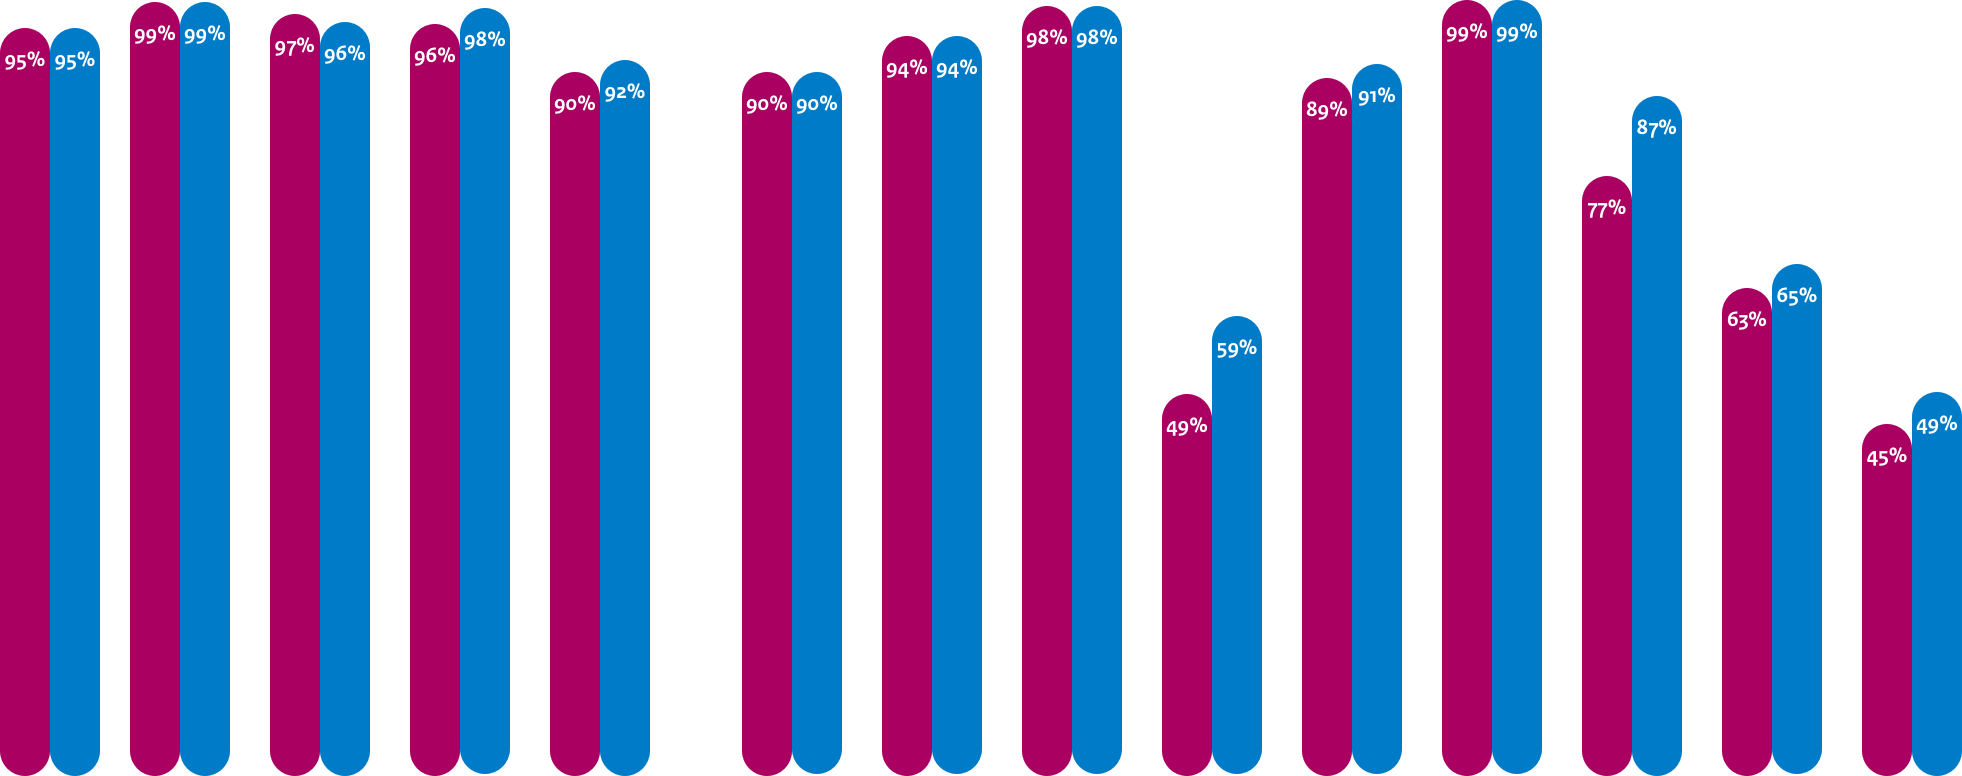 Gemiddelde adoptie webstandaarden Gemeenten
DNSSEC: 95%, 95%
TLS: 99%, 99%
TLS NCSC: 97%, 96%
HTTPS: 96%, 98%
HSTS: 90%, 92%

Gemiddelde adoptie mailstandaarden Anti-phishing Gemeenten
DMARC: 90%, 90%
DKIM: 94%, 94%
SPF: 98%, 98%
DMARC Policy: 49%, 59%
SPF Policy: 89%, 91%

Gemiddelde adoptie mailstandaarden Vertrouwelijkheid Gemeenten
START TLS: 99%, 99%
START TLS NCSC: 77%, 87%
DNSSEC MX: 63%, 65%
DANE: 45%, 49%